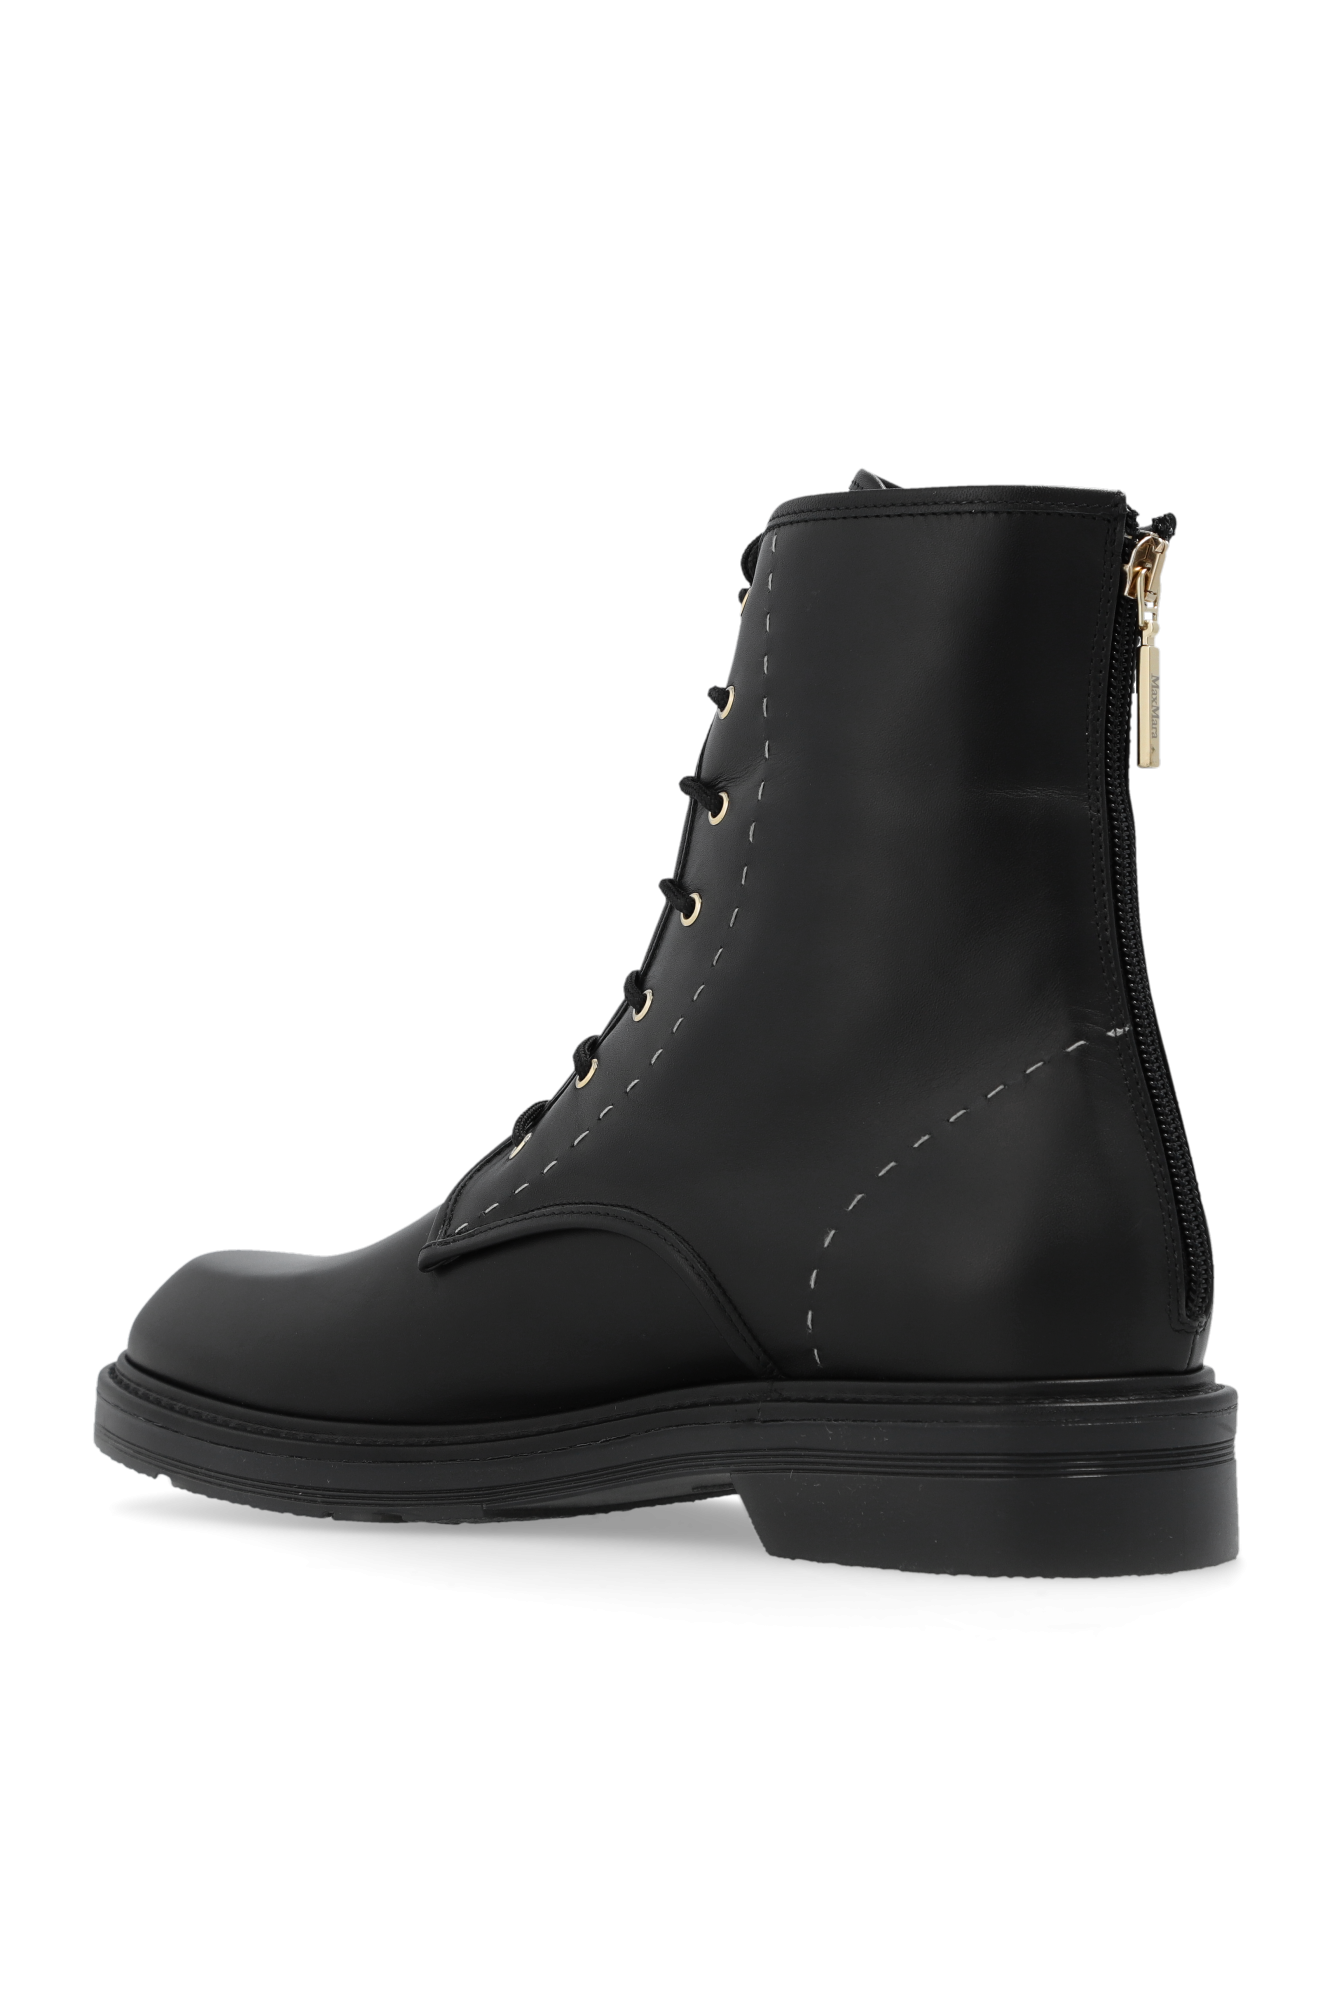 Max Mara Combat boots | Women's Shoes | Vitkac